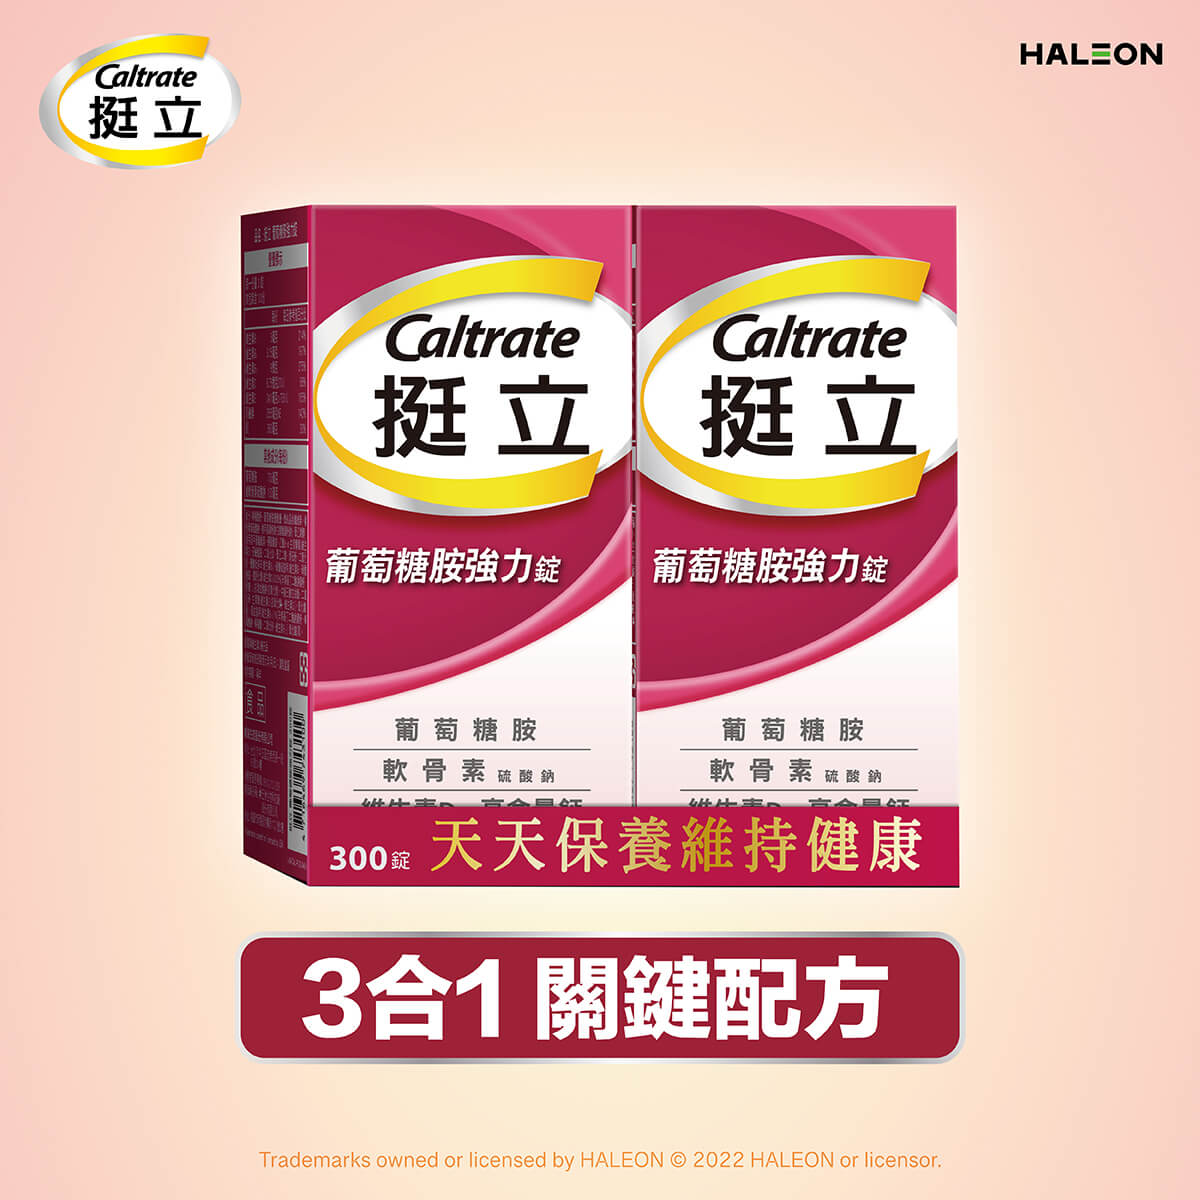 Caltrate 挺立葡萄糖胺強力錠300錠,葡萄糖胺、軟骨素、檸檬酸鈣+維生素D3